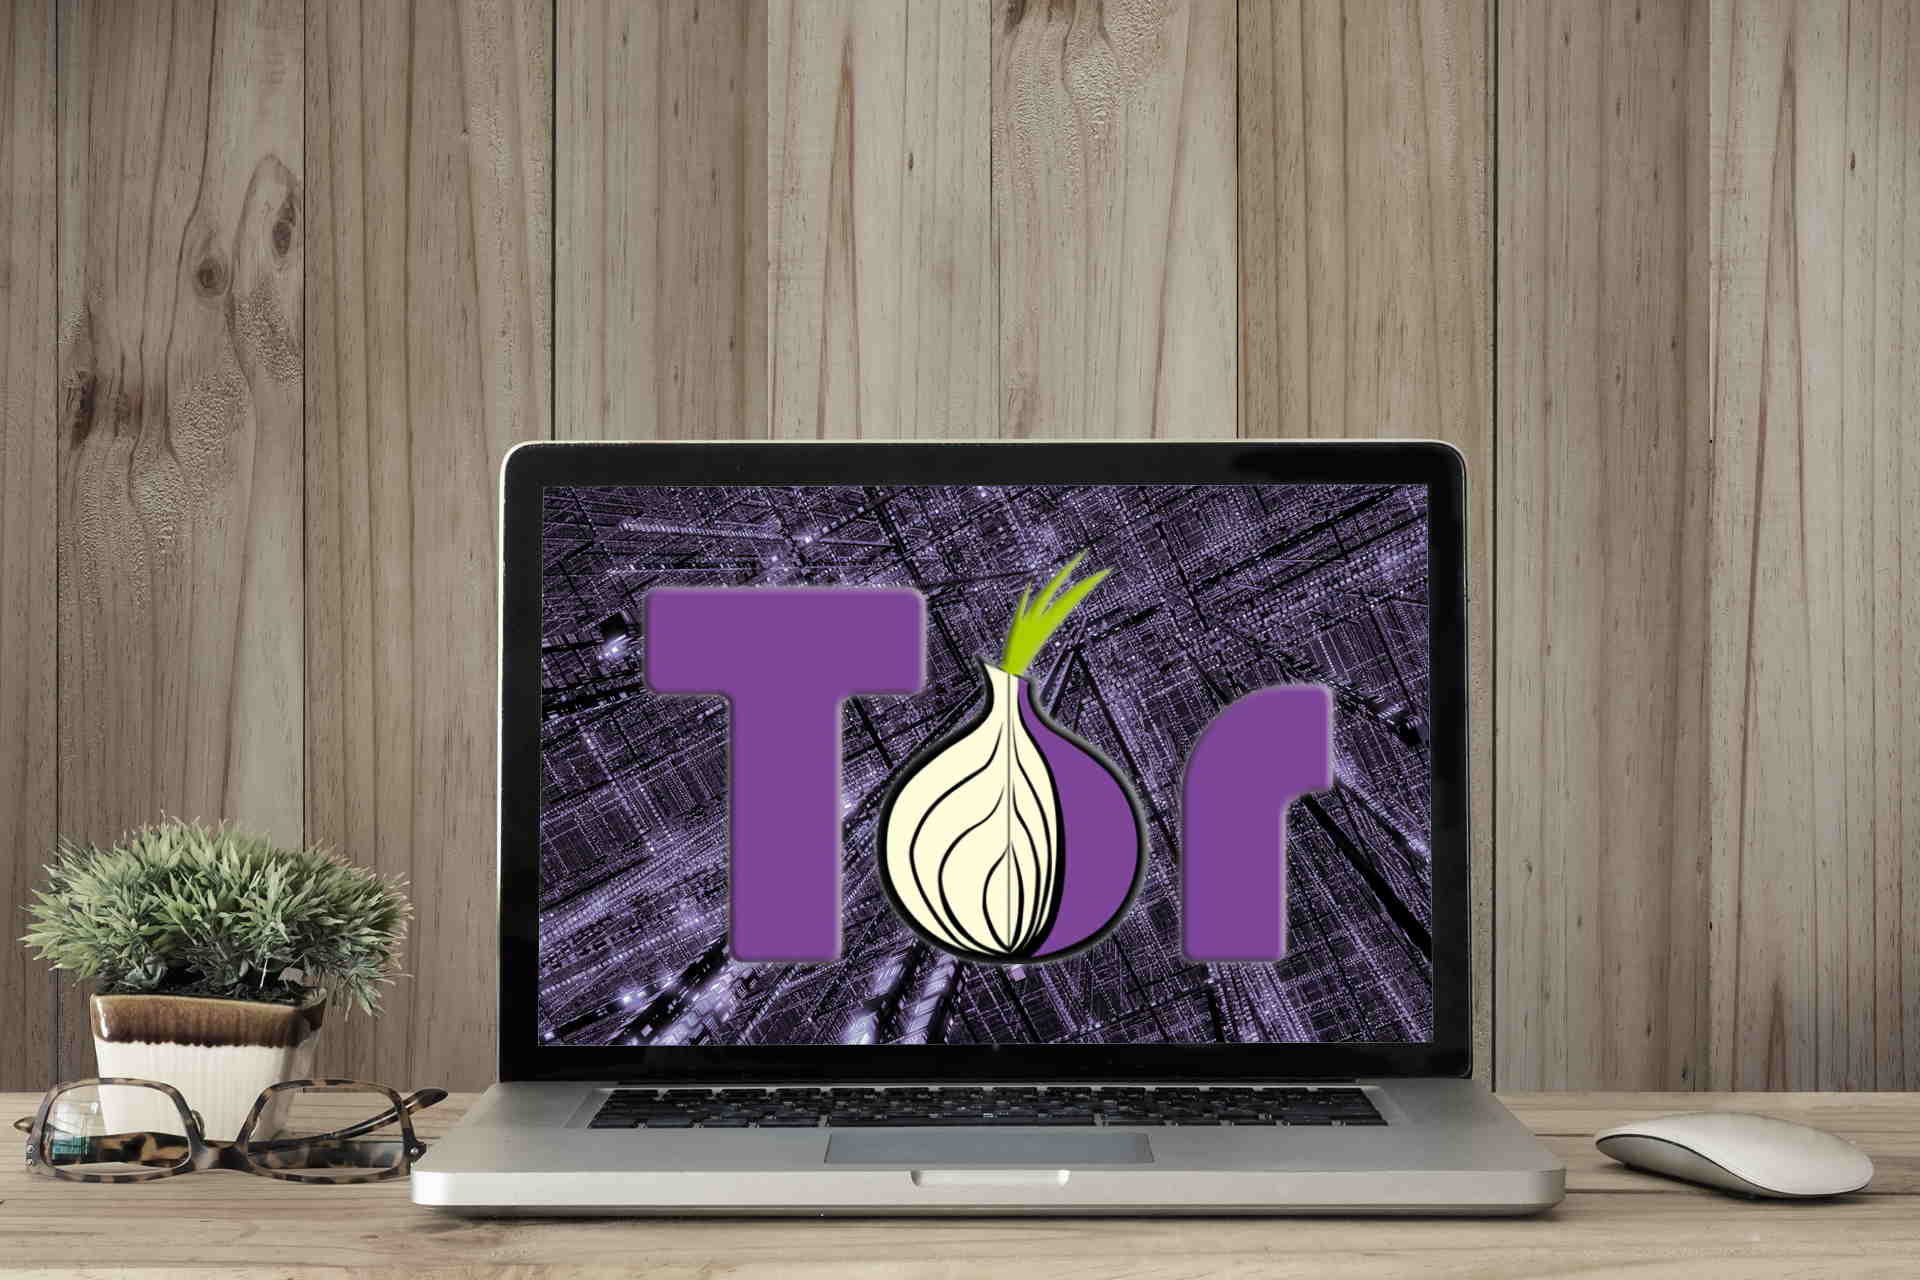 Tor browser already running gydra в тор браузере не показывает видео в попасть на гидру